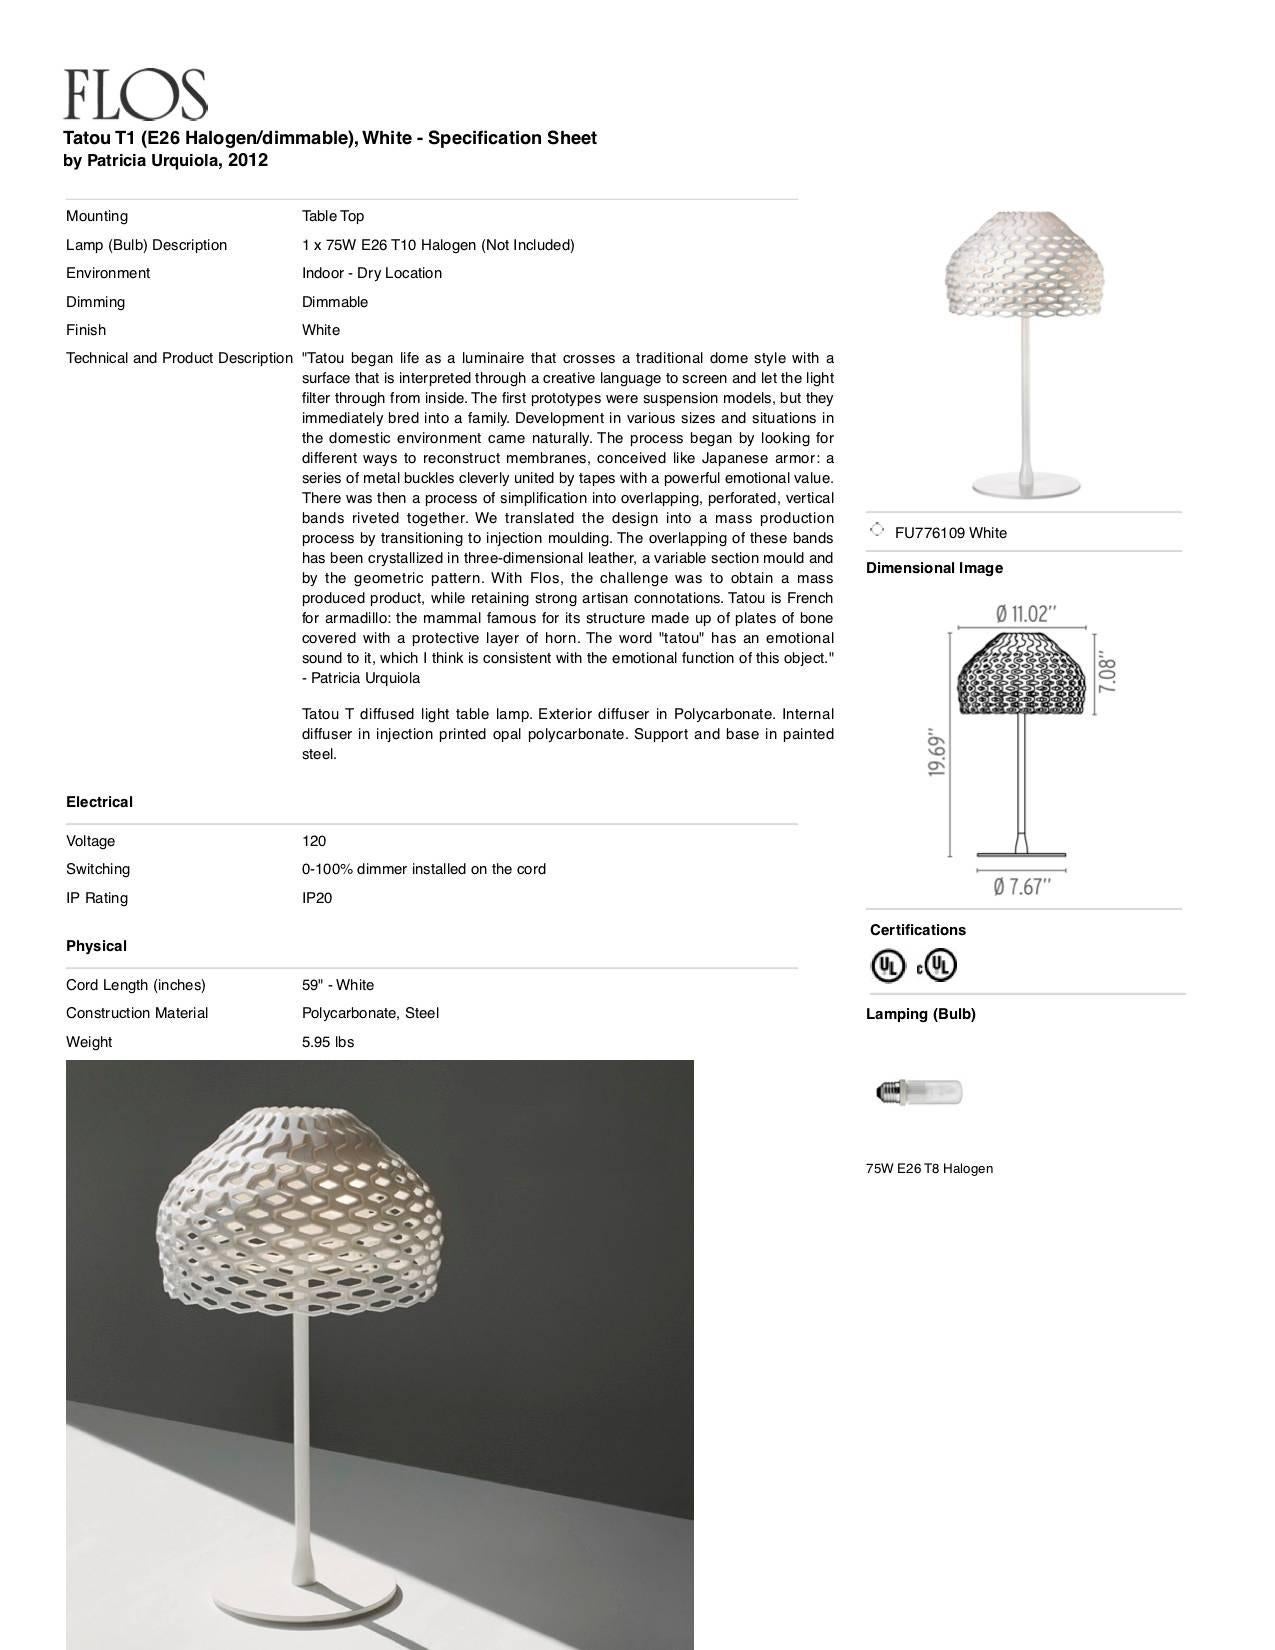 FLOS Tatou T1 lampe de bureau halogène à gradation blanche de Patricia Urquiola en vente 1